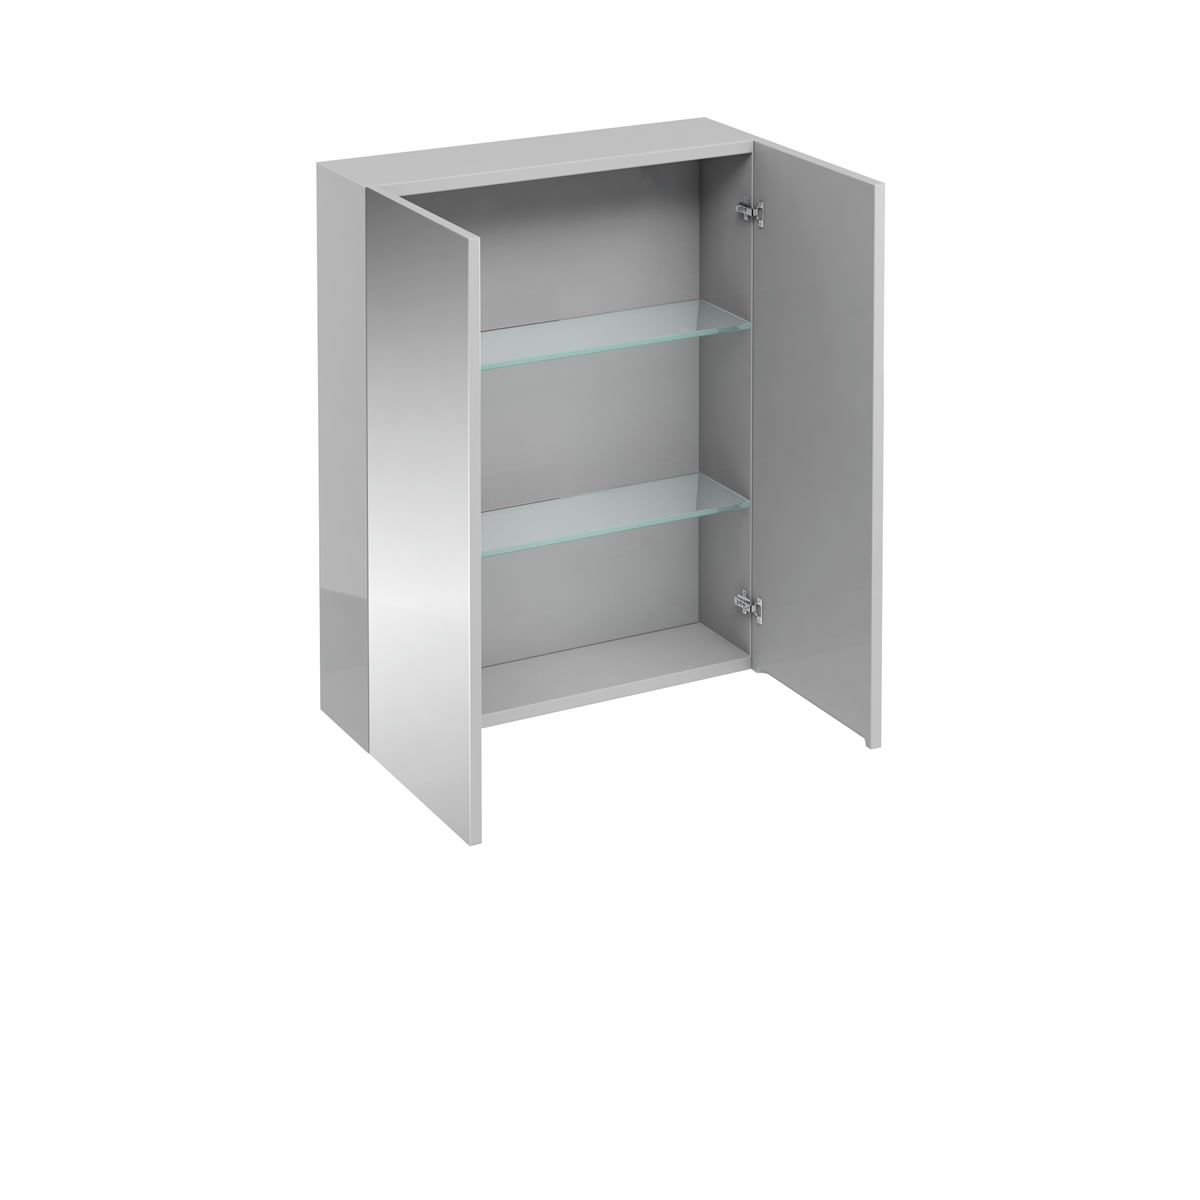 600 double mirrored door wall cabinet - Light grey